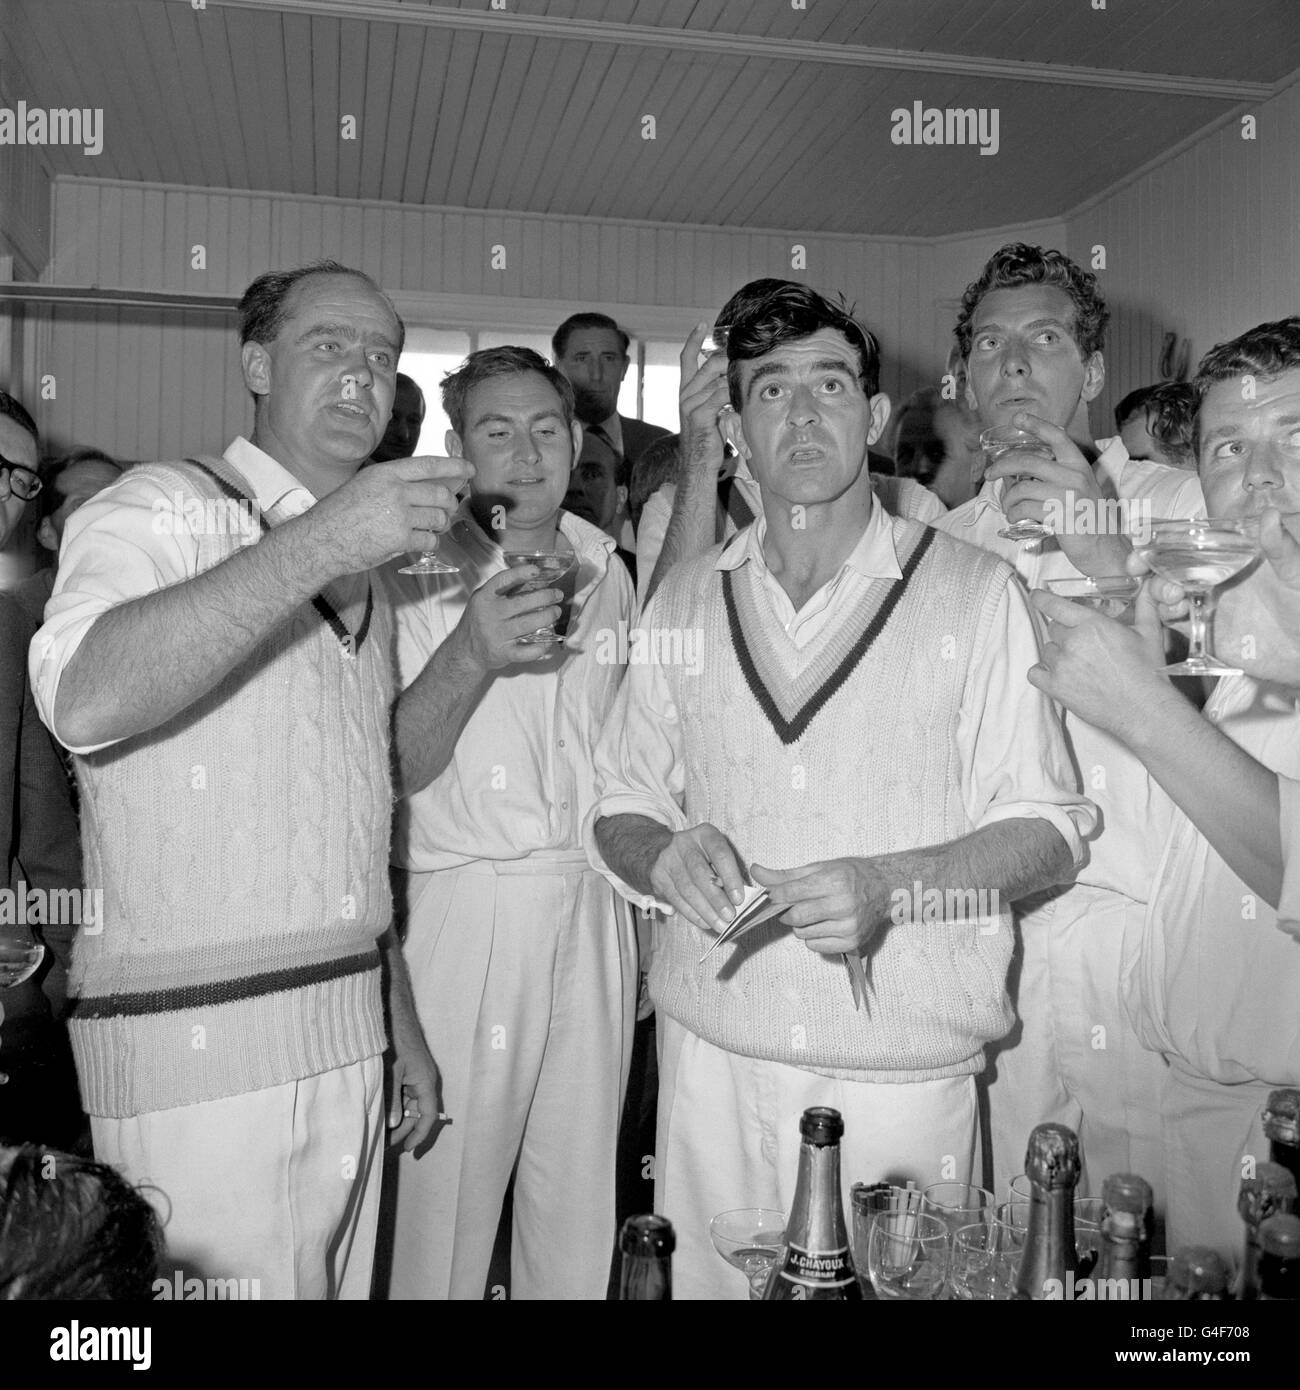 Le capitaine Brian Close, parti, toasts son équipe avec du champagne après que Yorkshire ait remporté le championnat du comté de Harrogate. De gauche à droite; Brian Close, Ray Illingworth, Fred Trueman, Don Wilson et Phil Sharpe. Banque D'Images